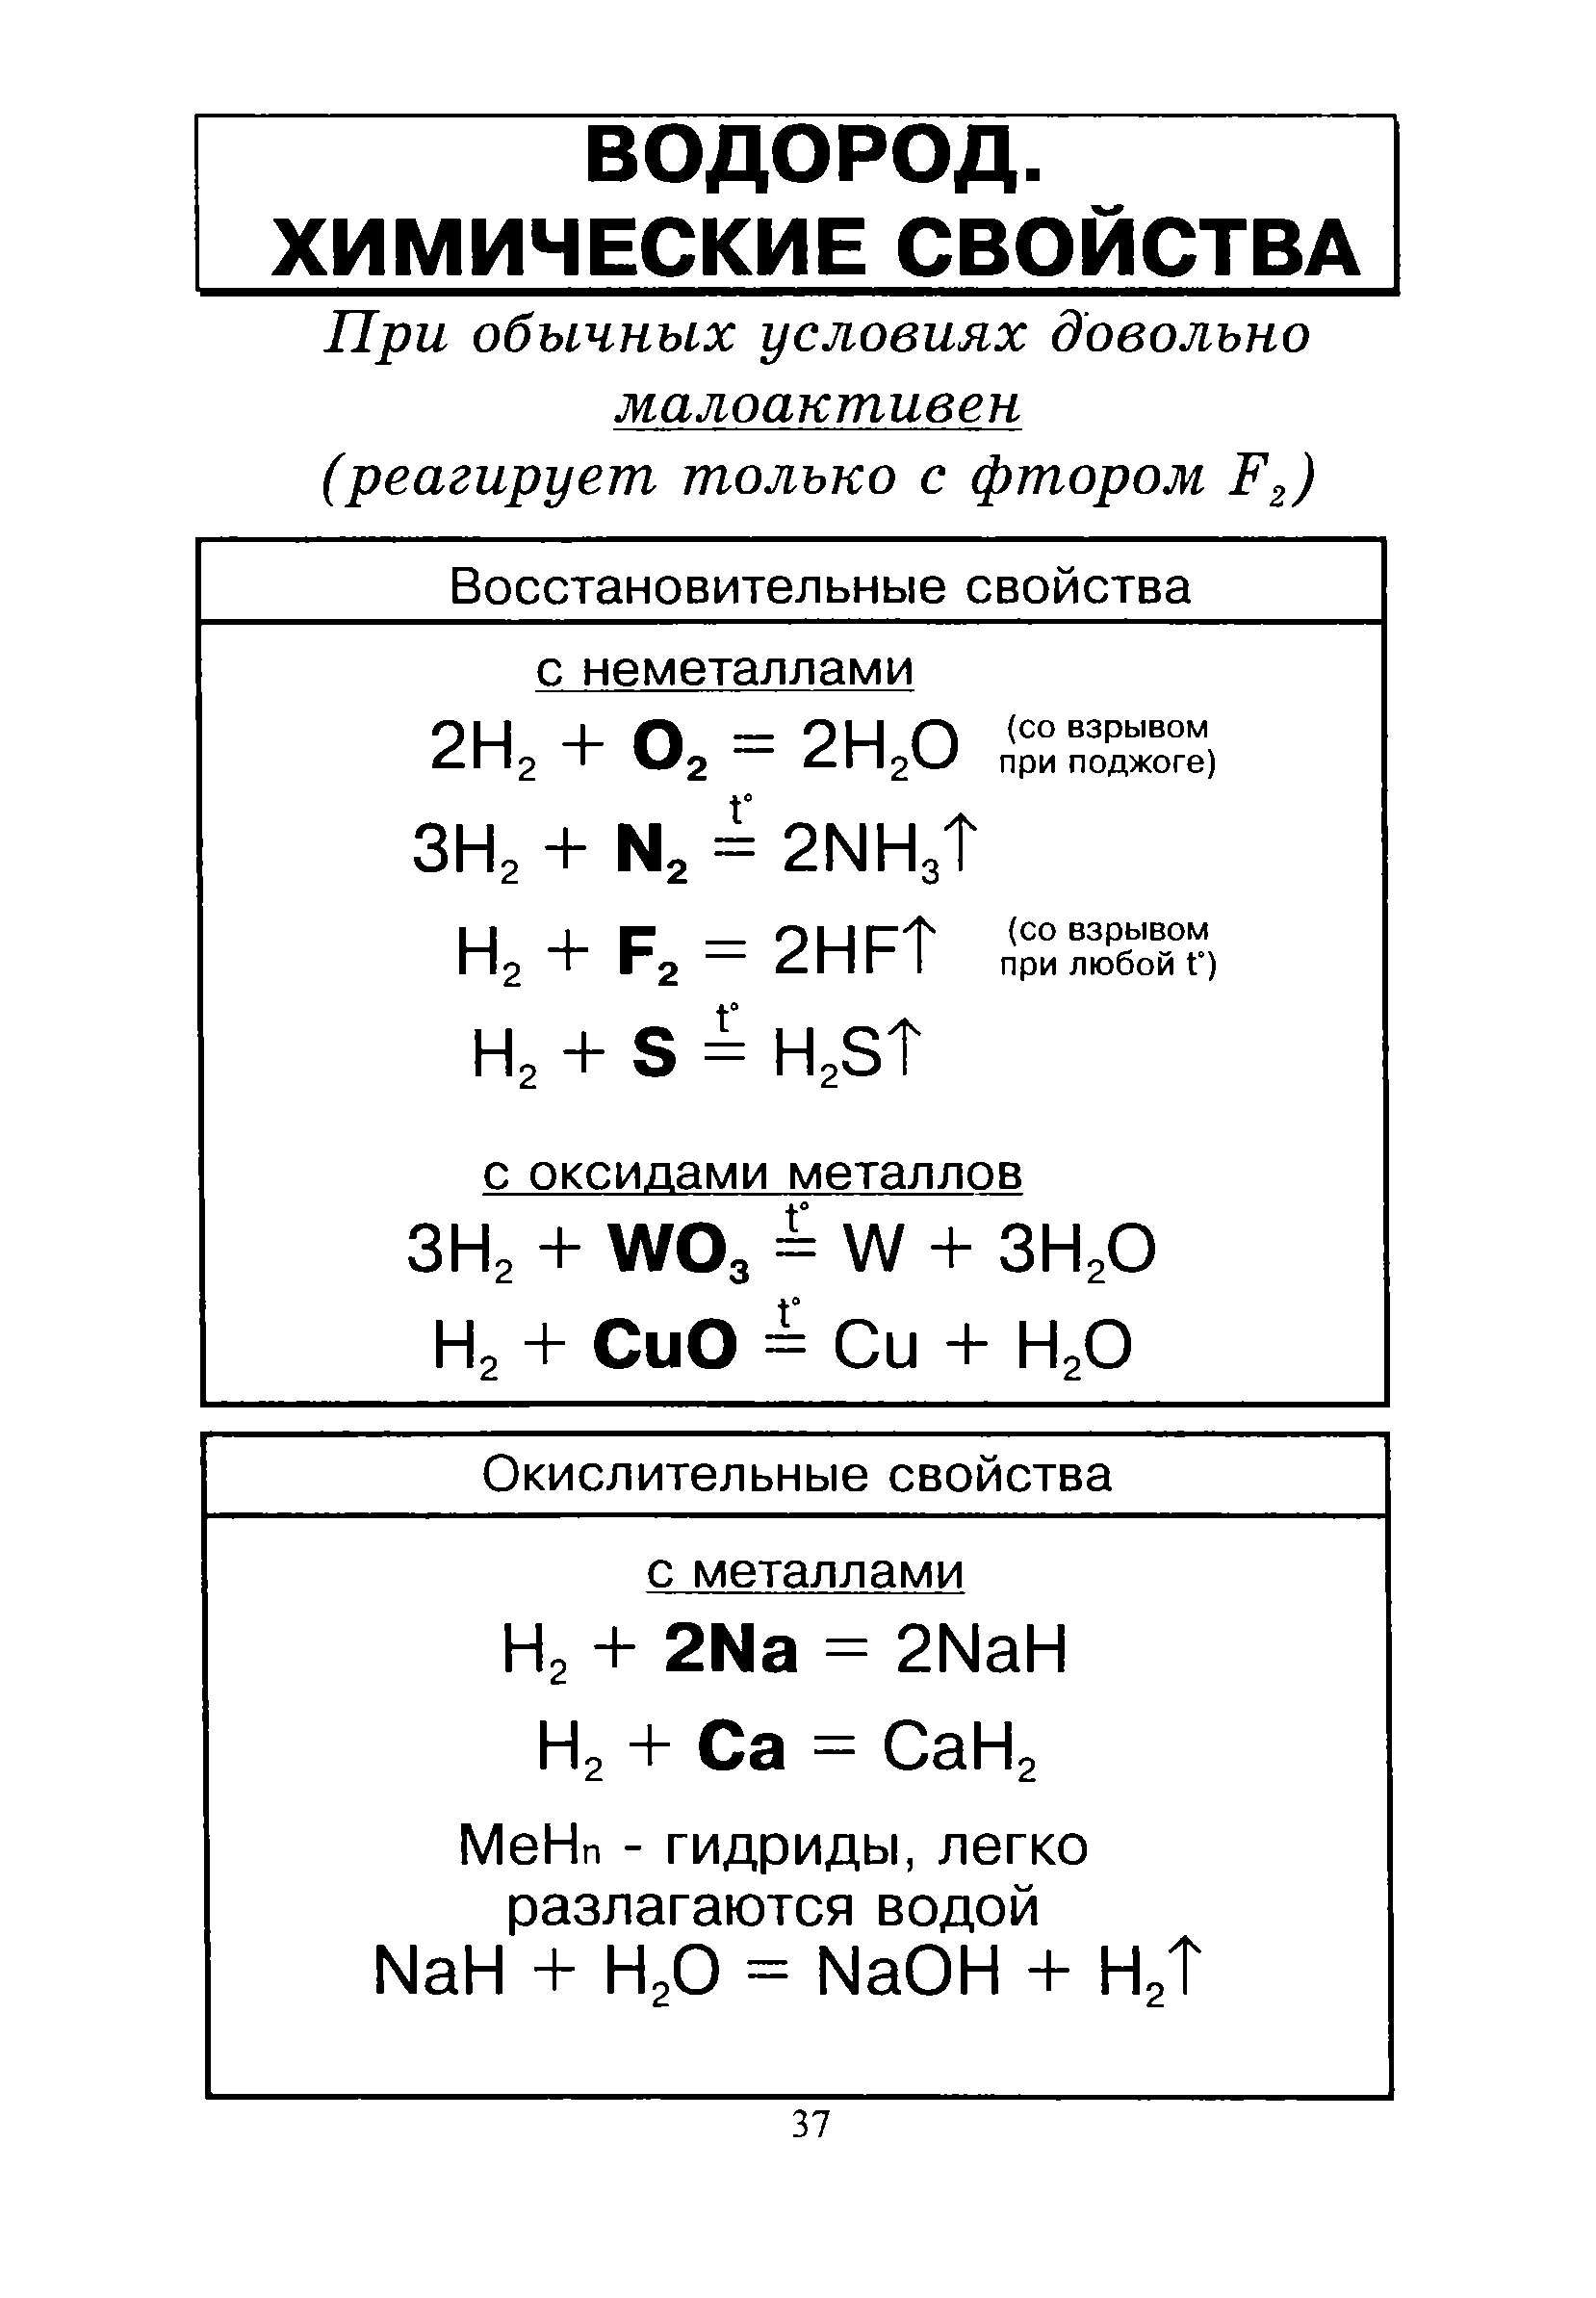 Водород оксид неметалла. Химические свойства водорода 8 класс химия. Химические свойства водорода 9 класс химия. Химические свойства водорода реакции. Характеристика водорода химические свойства.